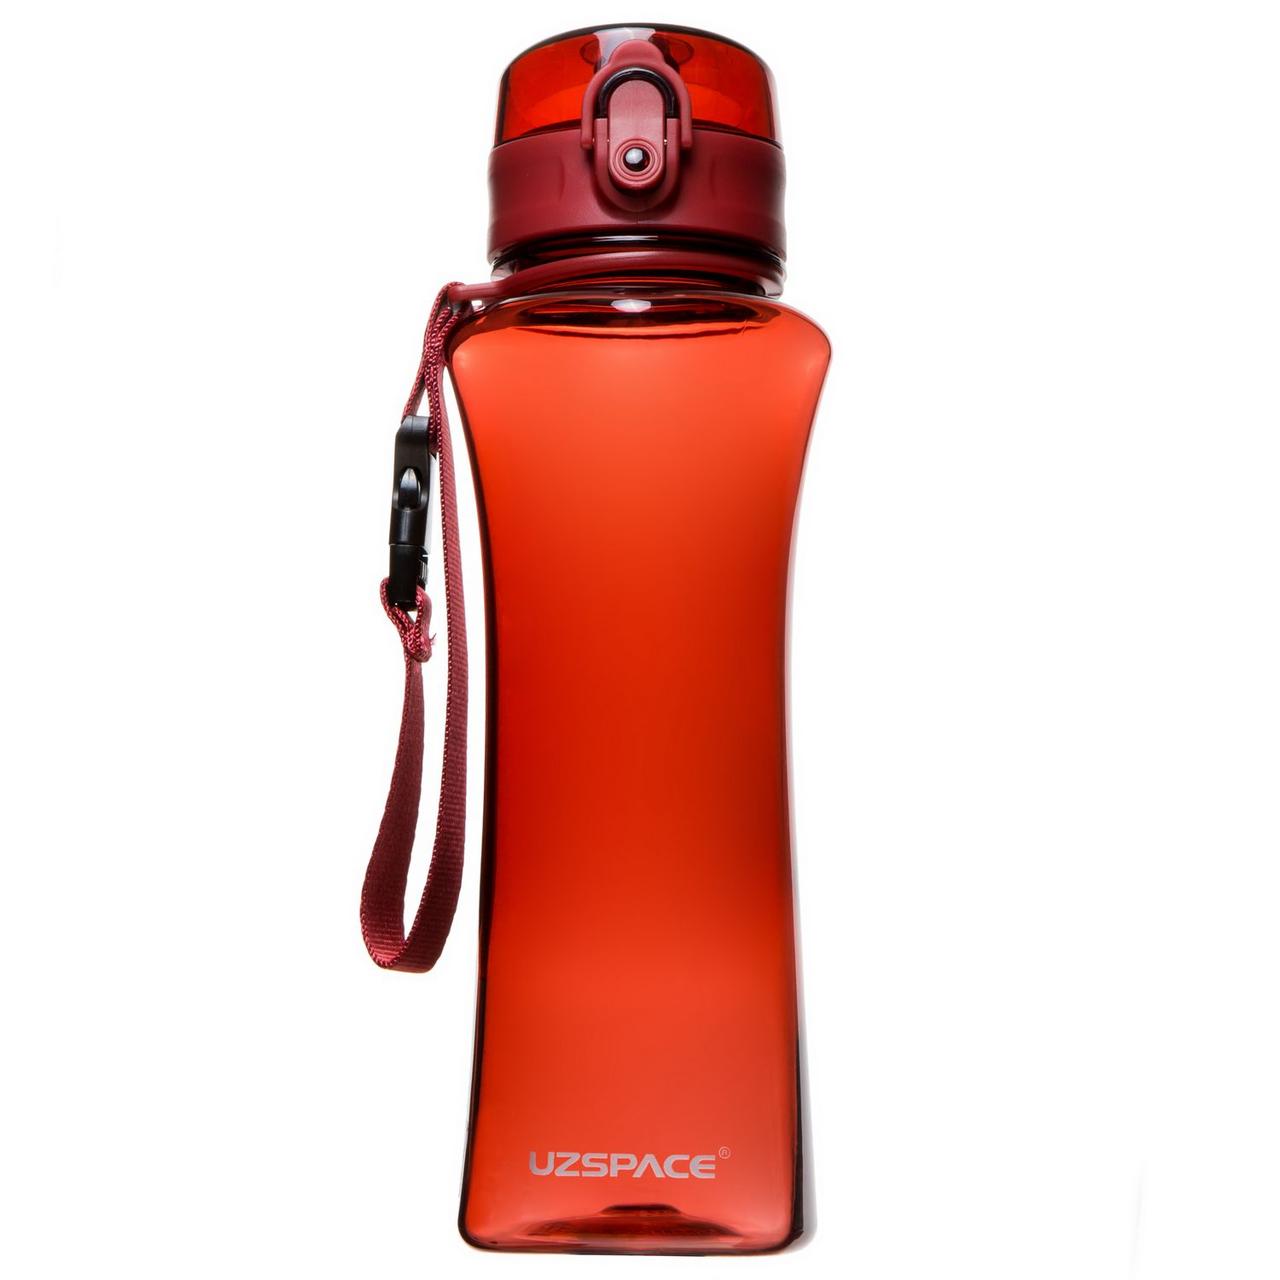 Бутылка для воды uzspace. UZSPACE бутылка для воды красная 580 мл. Красная бутылка UZSPACE. UZSPACE 1500. UZSPACE красный.